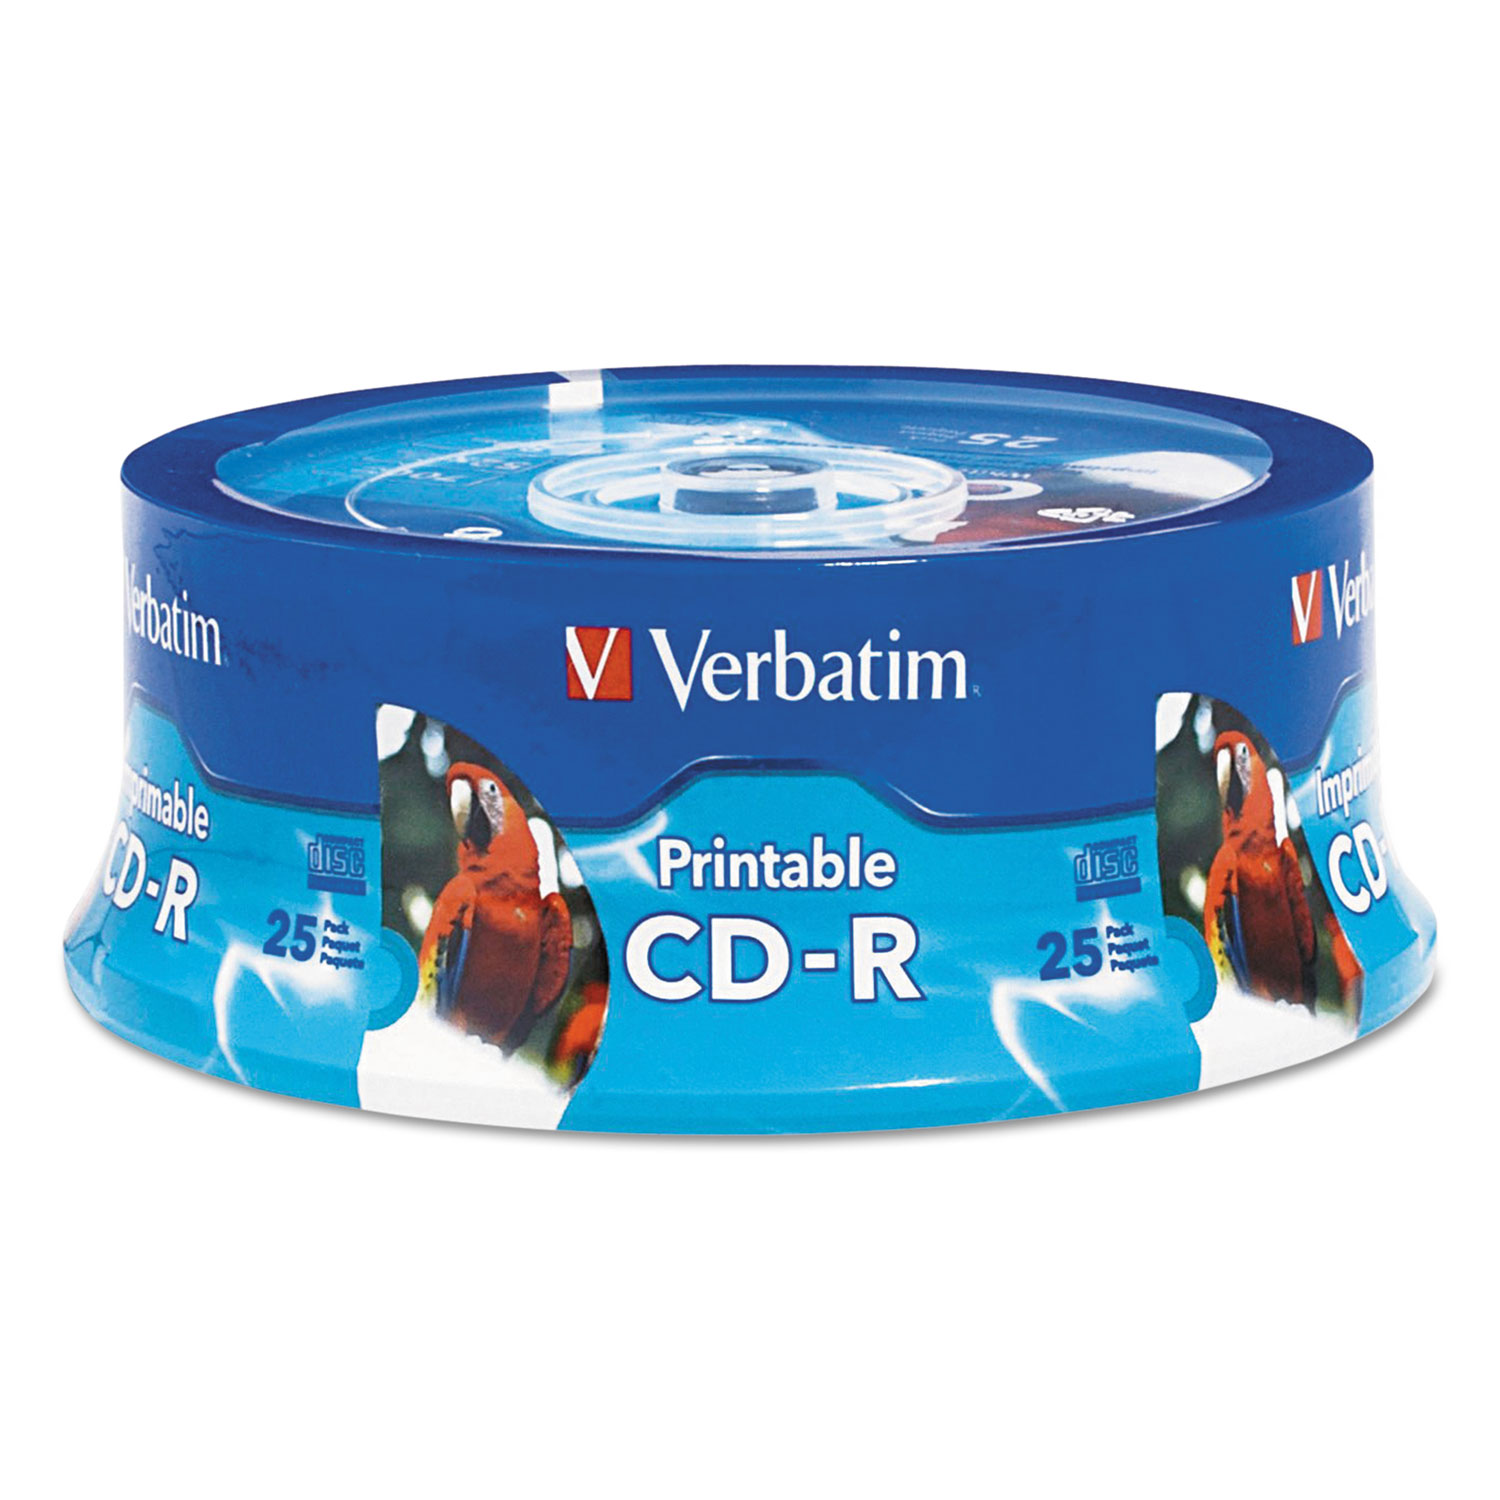  Verbatim 96189 CD-R, 700MB, 52X, White Inkjet Printable, Hub Printable, 25/PK Branded Spindle (VER96189) 